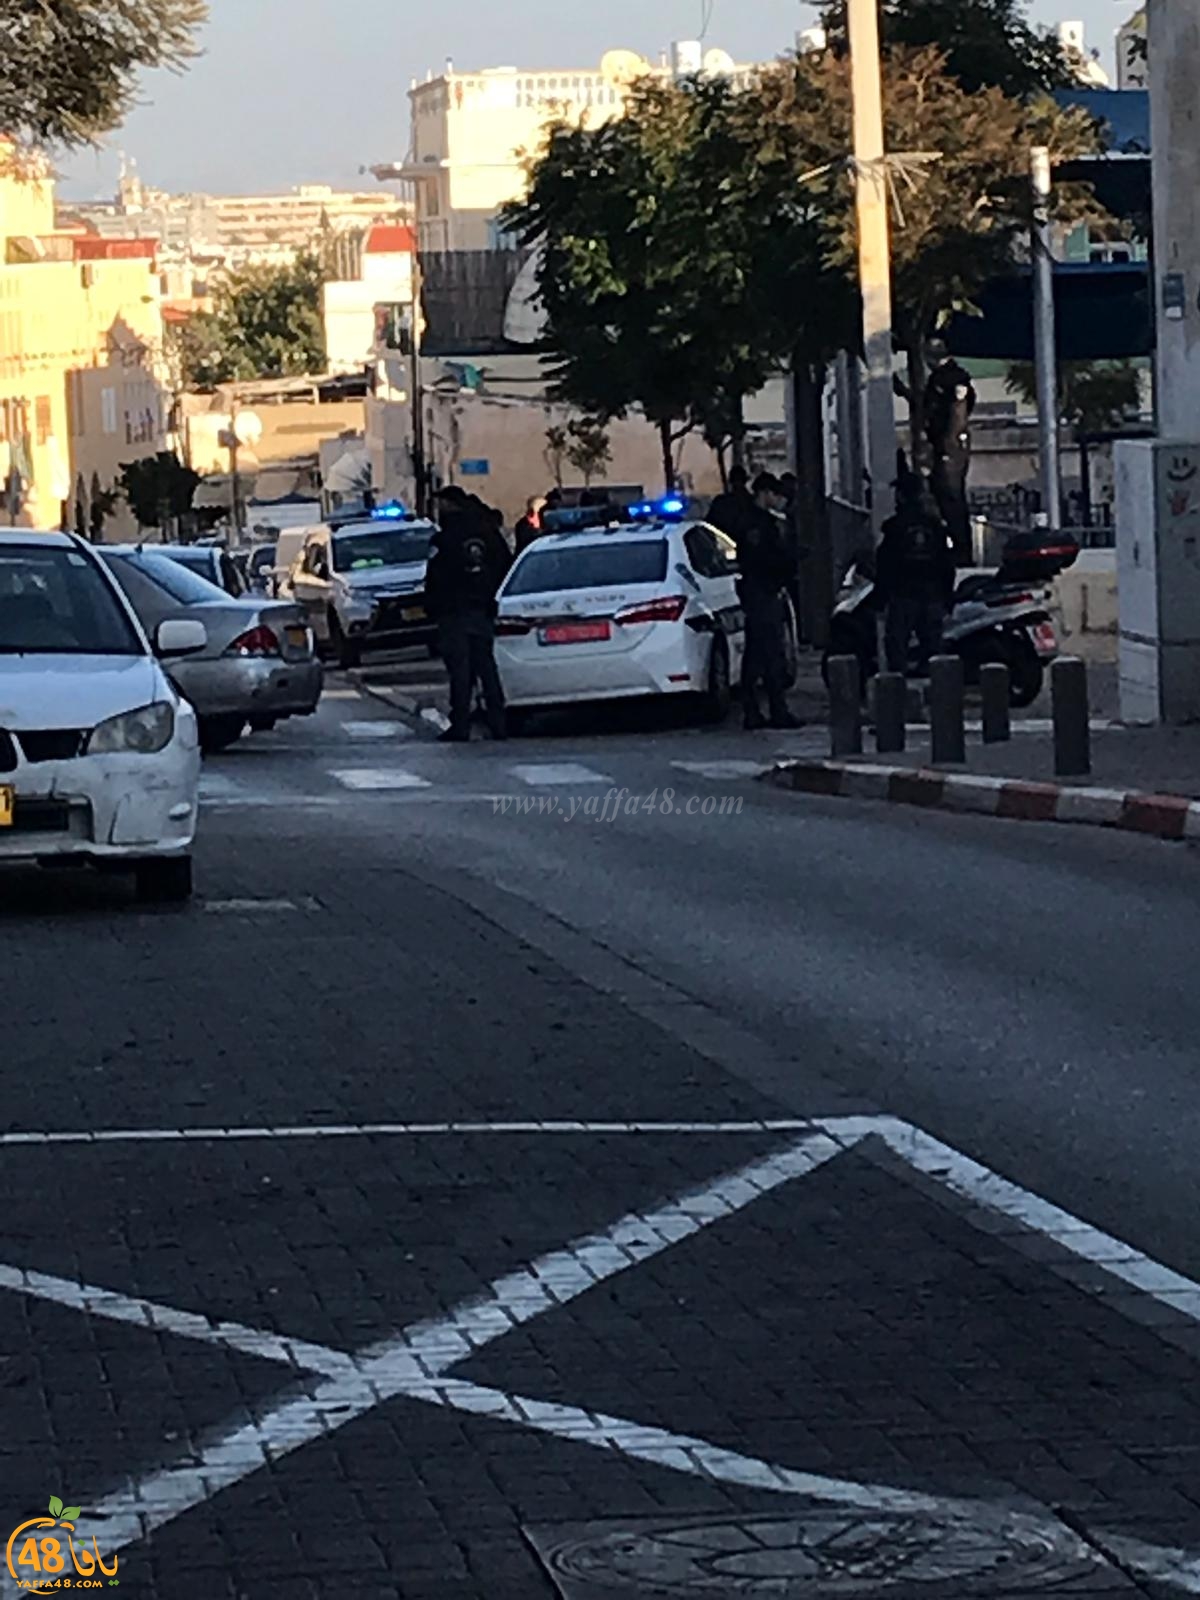  من جديد - الشرطة تعتدي على قاصرين في شارع مندس فرانس بيافا 